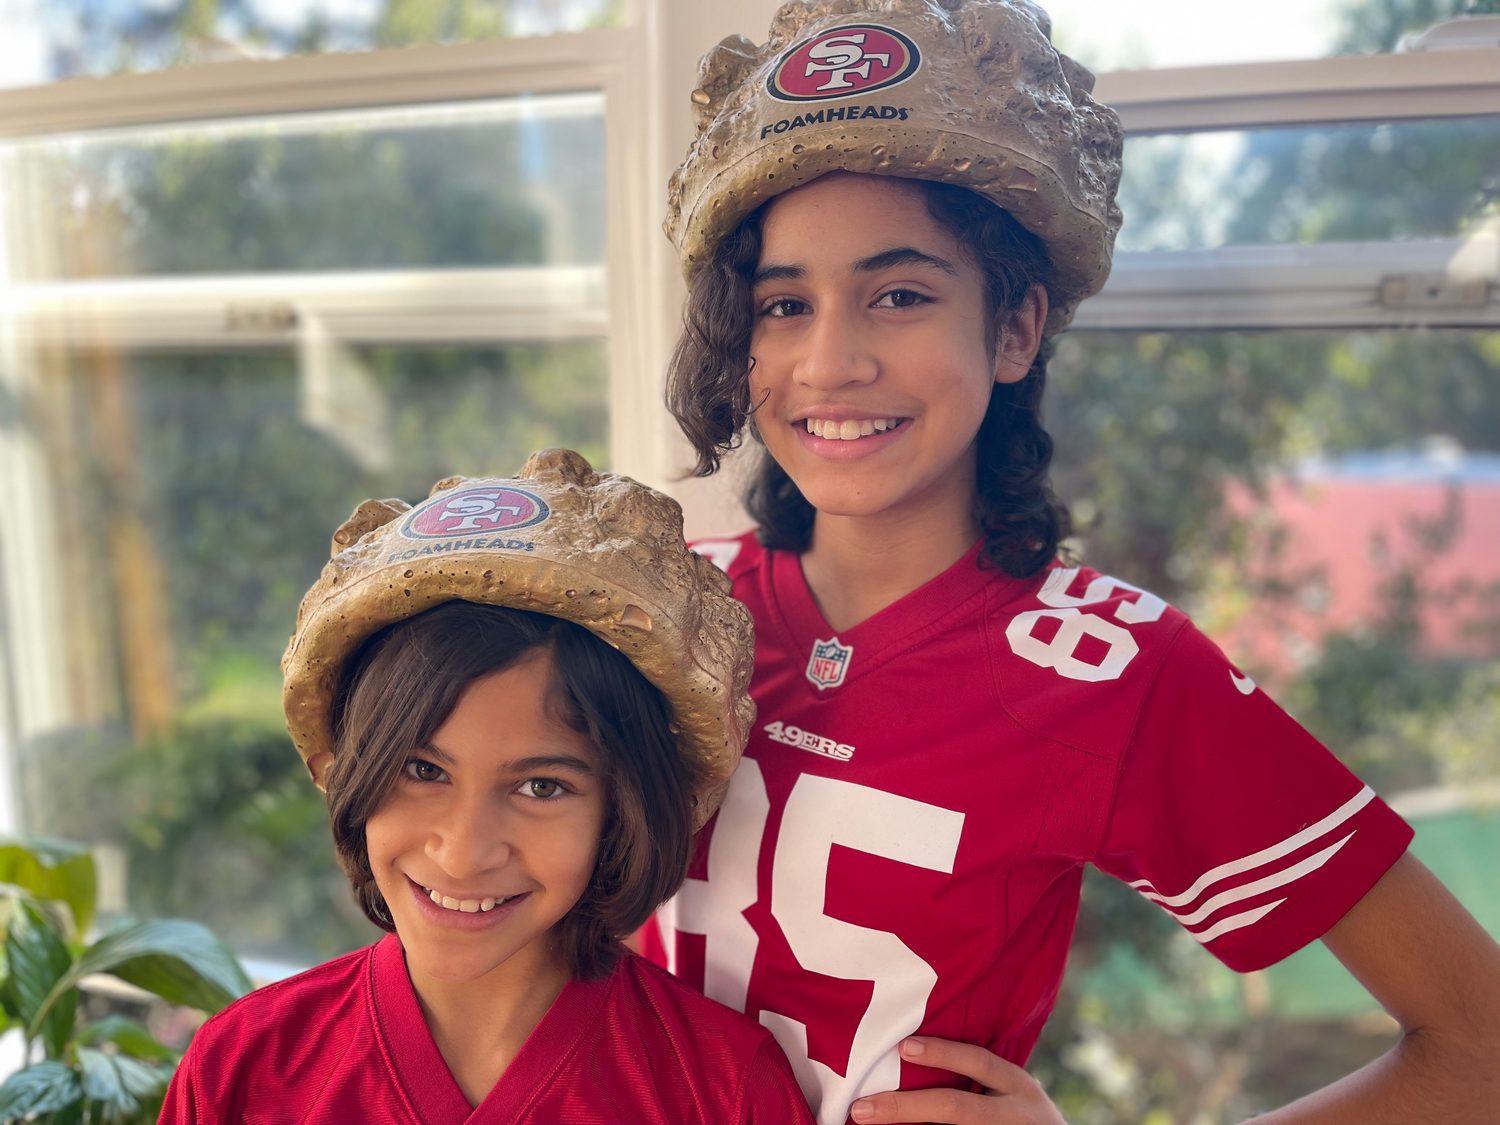 49ers on field hat